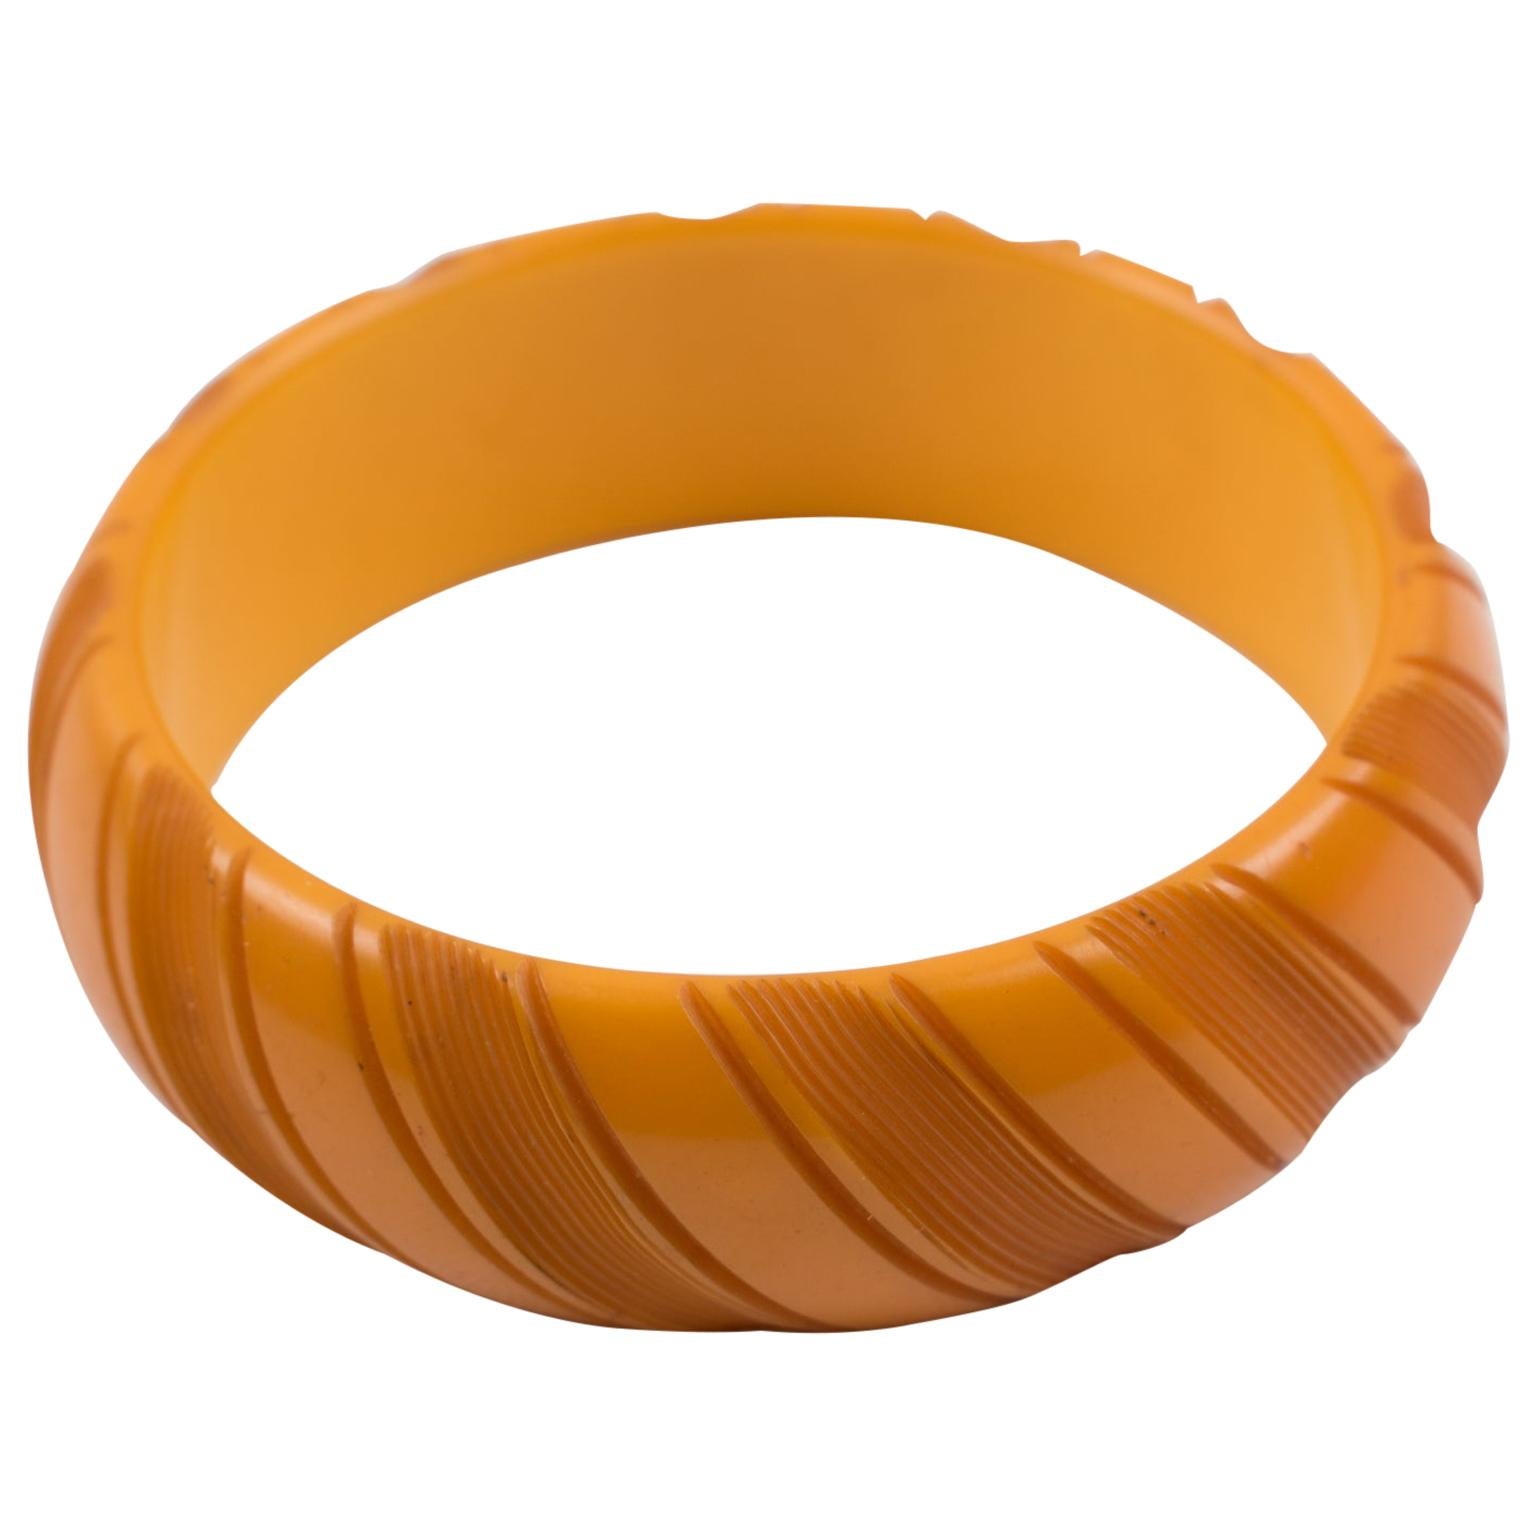 Dieser bezaubernde Bakelit-Armreif hat eine klobige, gewölbte Form mit tiefen geometrischen Schnitzereien und eine intensive, butterscotchgelbe/orange Farbe. 
Abmessungen: Innendurchmesser: 2,63 cm (6,6 cm) - Außendurchmesser: 3,19 cm (8,1 cm) -